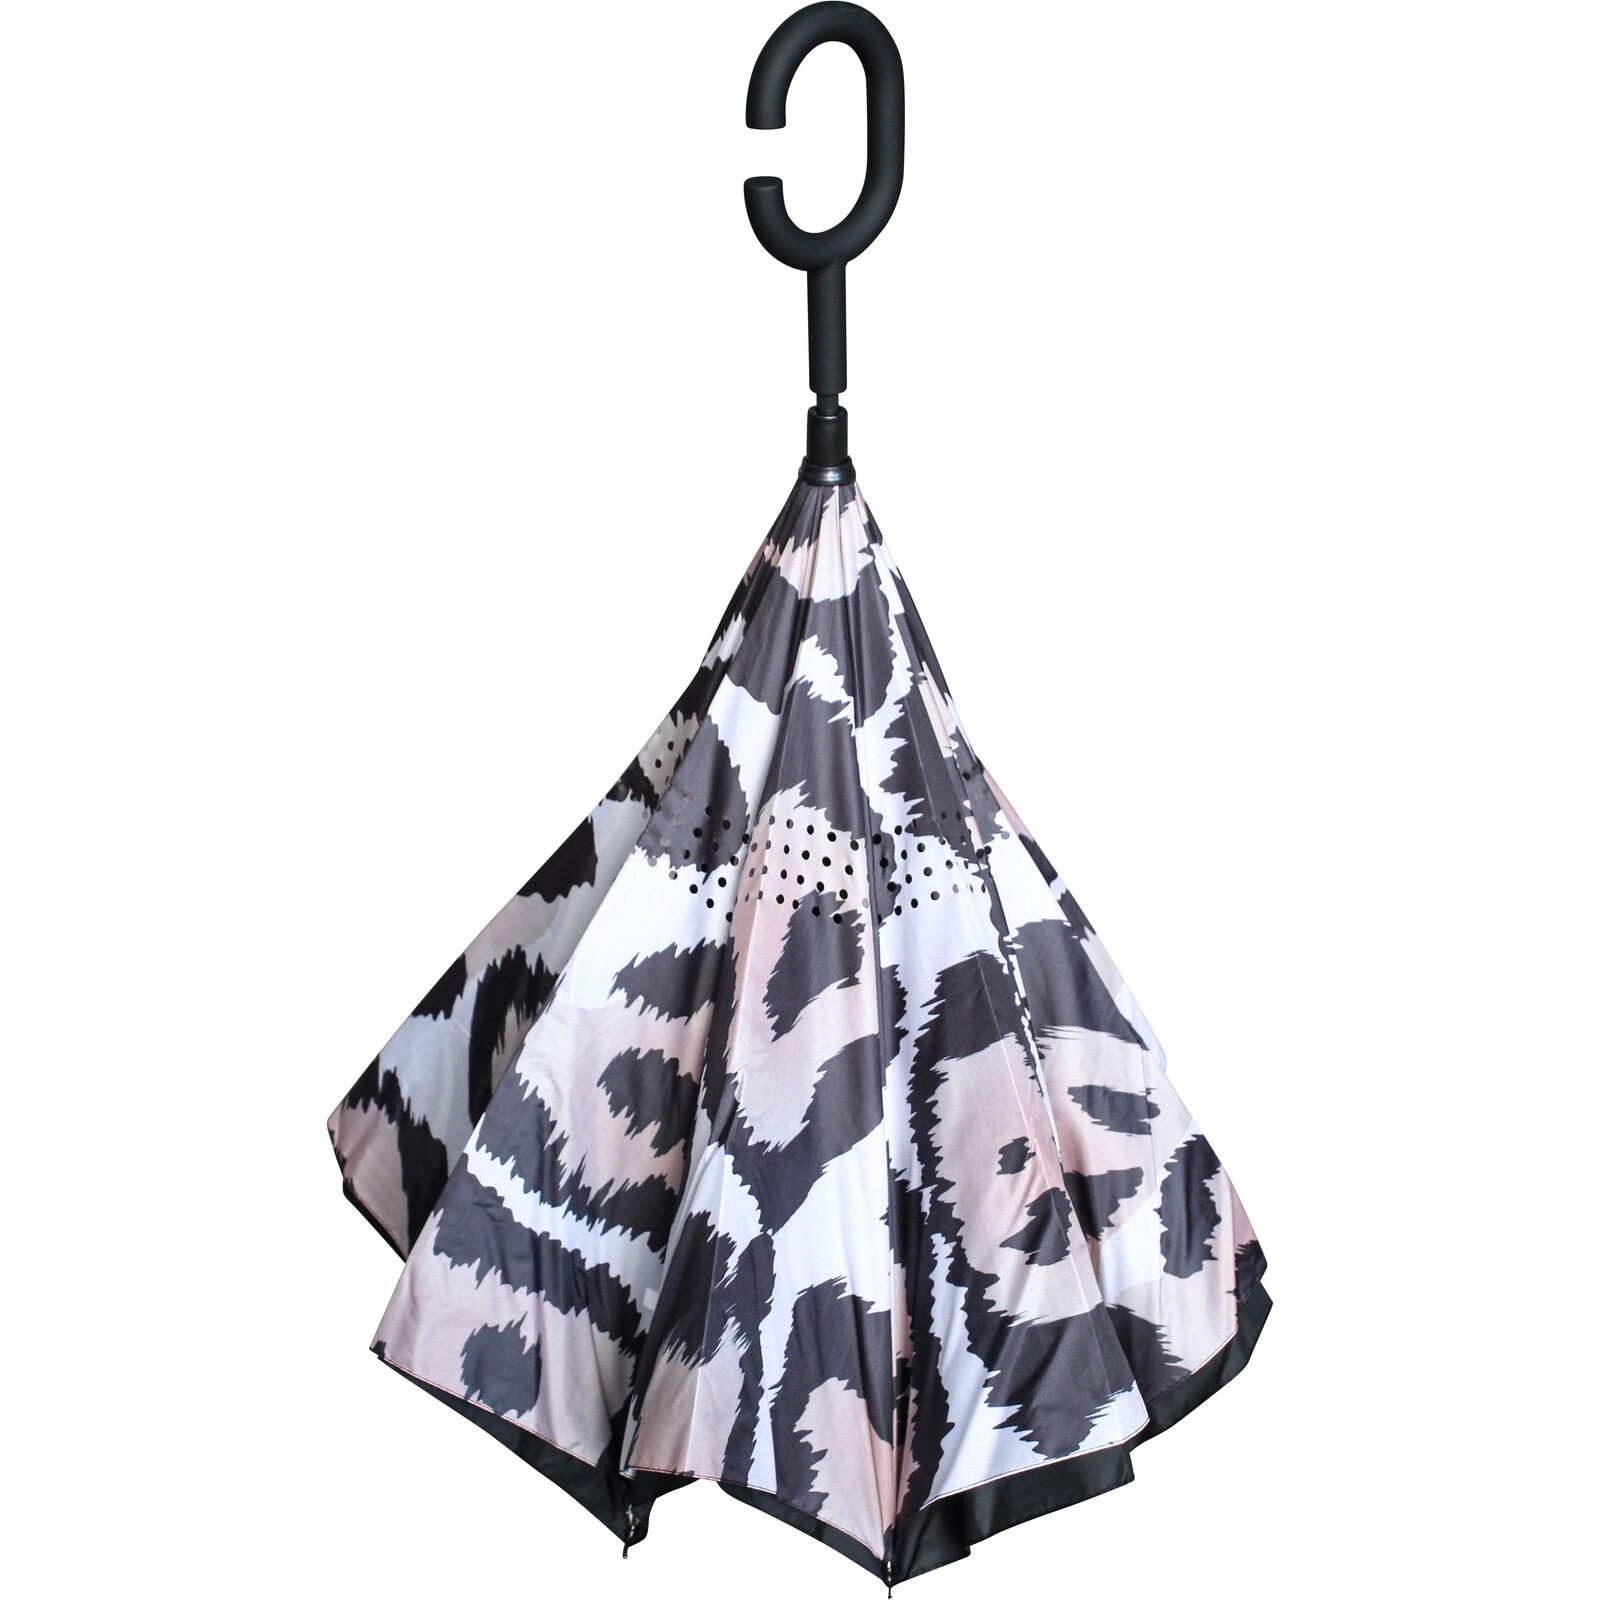 Umbrella Leopard Print